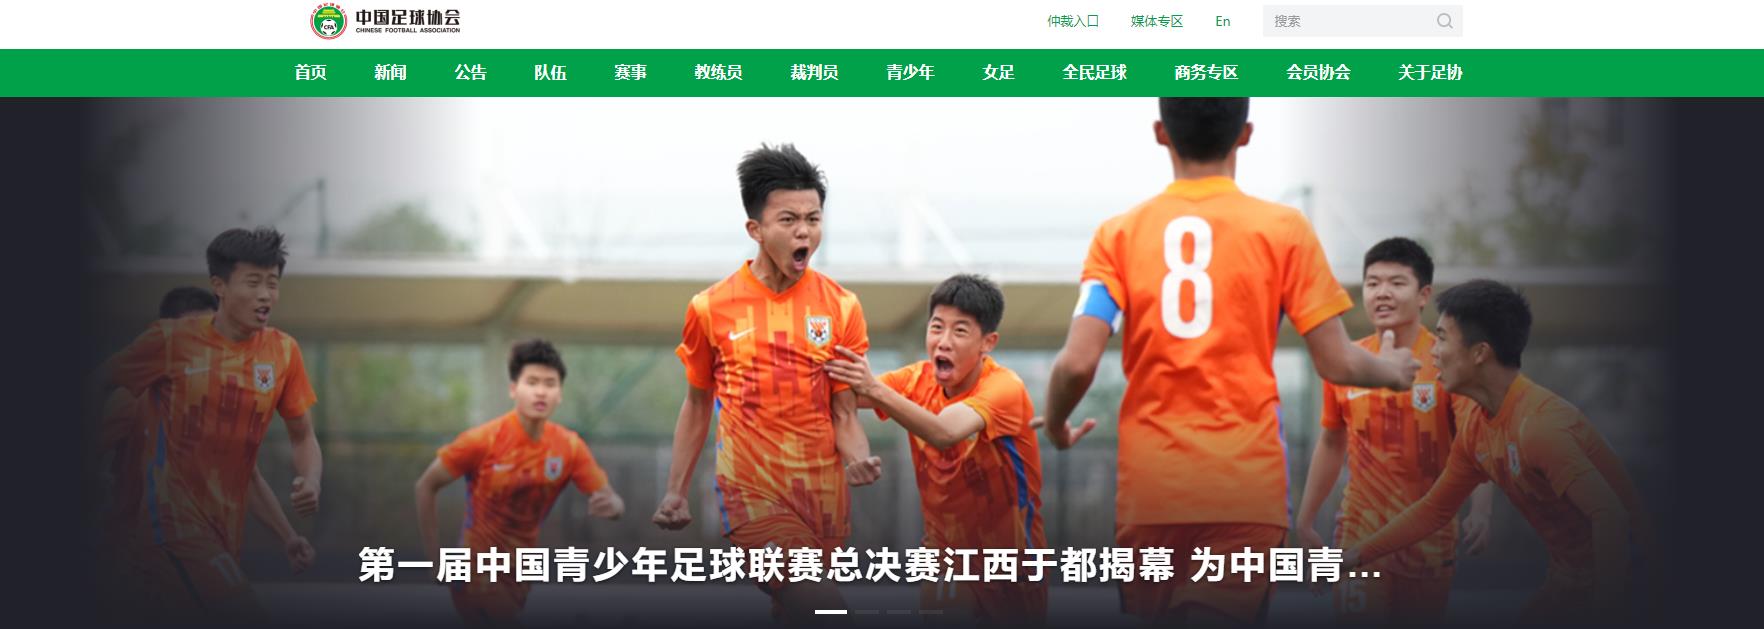 中国足球协会官网